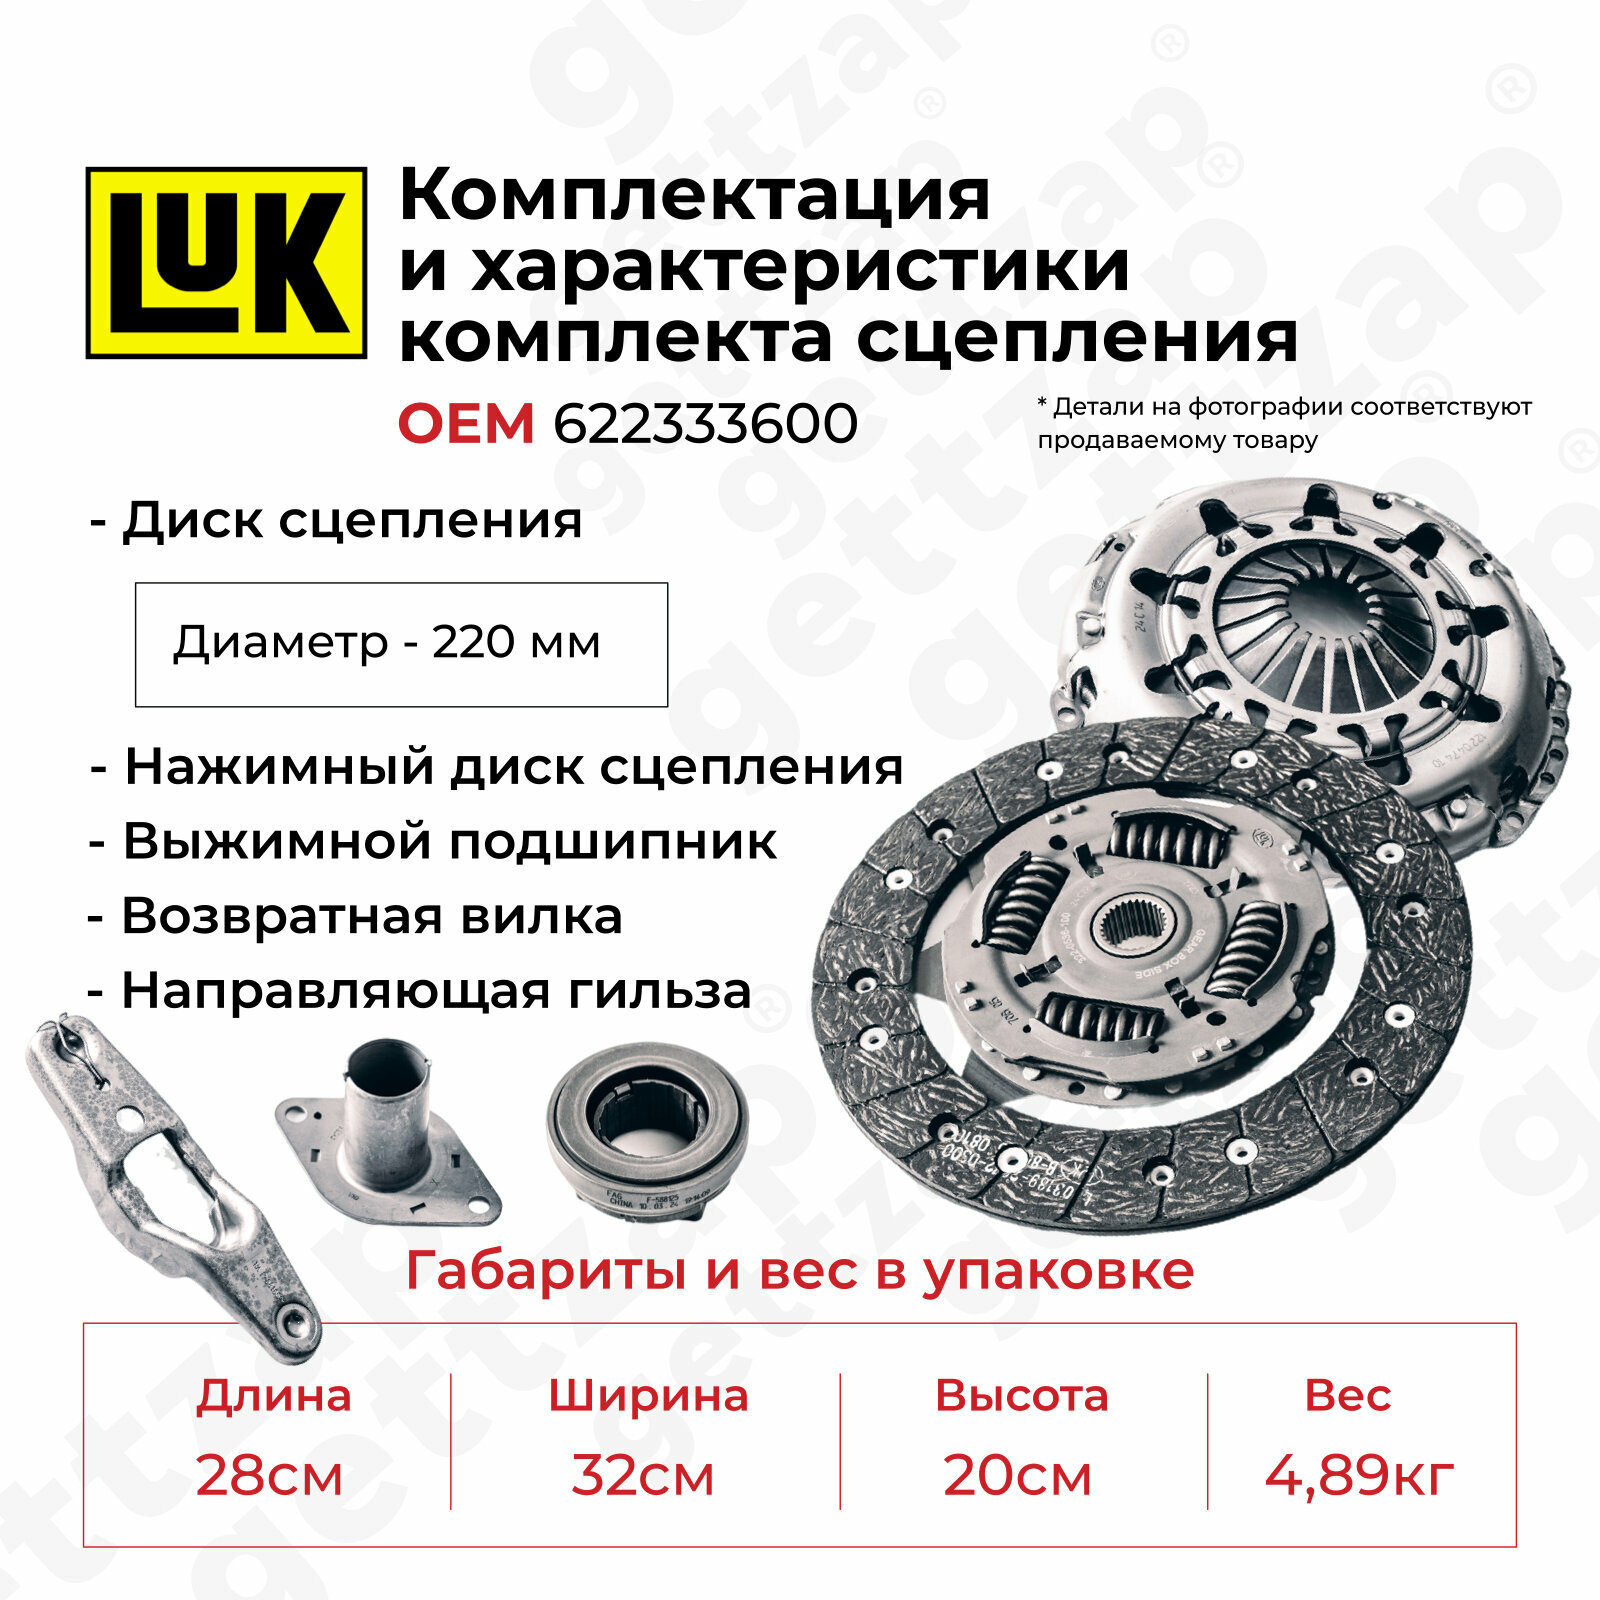 Комплект сцепления LuK 622333600 / 3189000025 (сцепление + нажимной диск + выжимной подшипник + втулка + вилка)